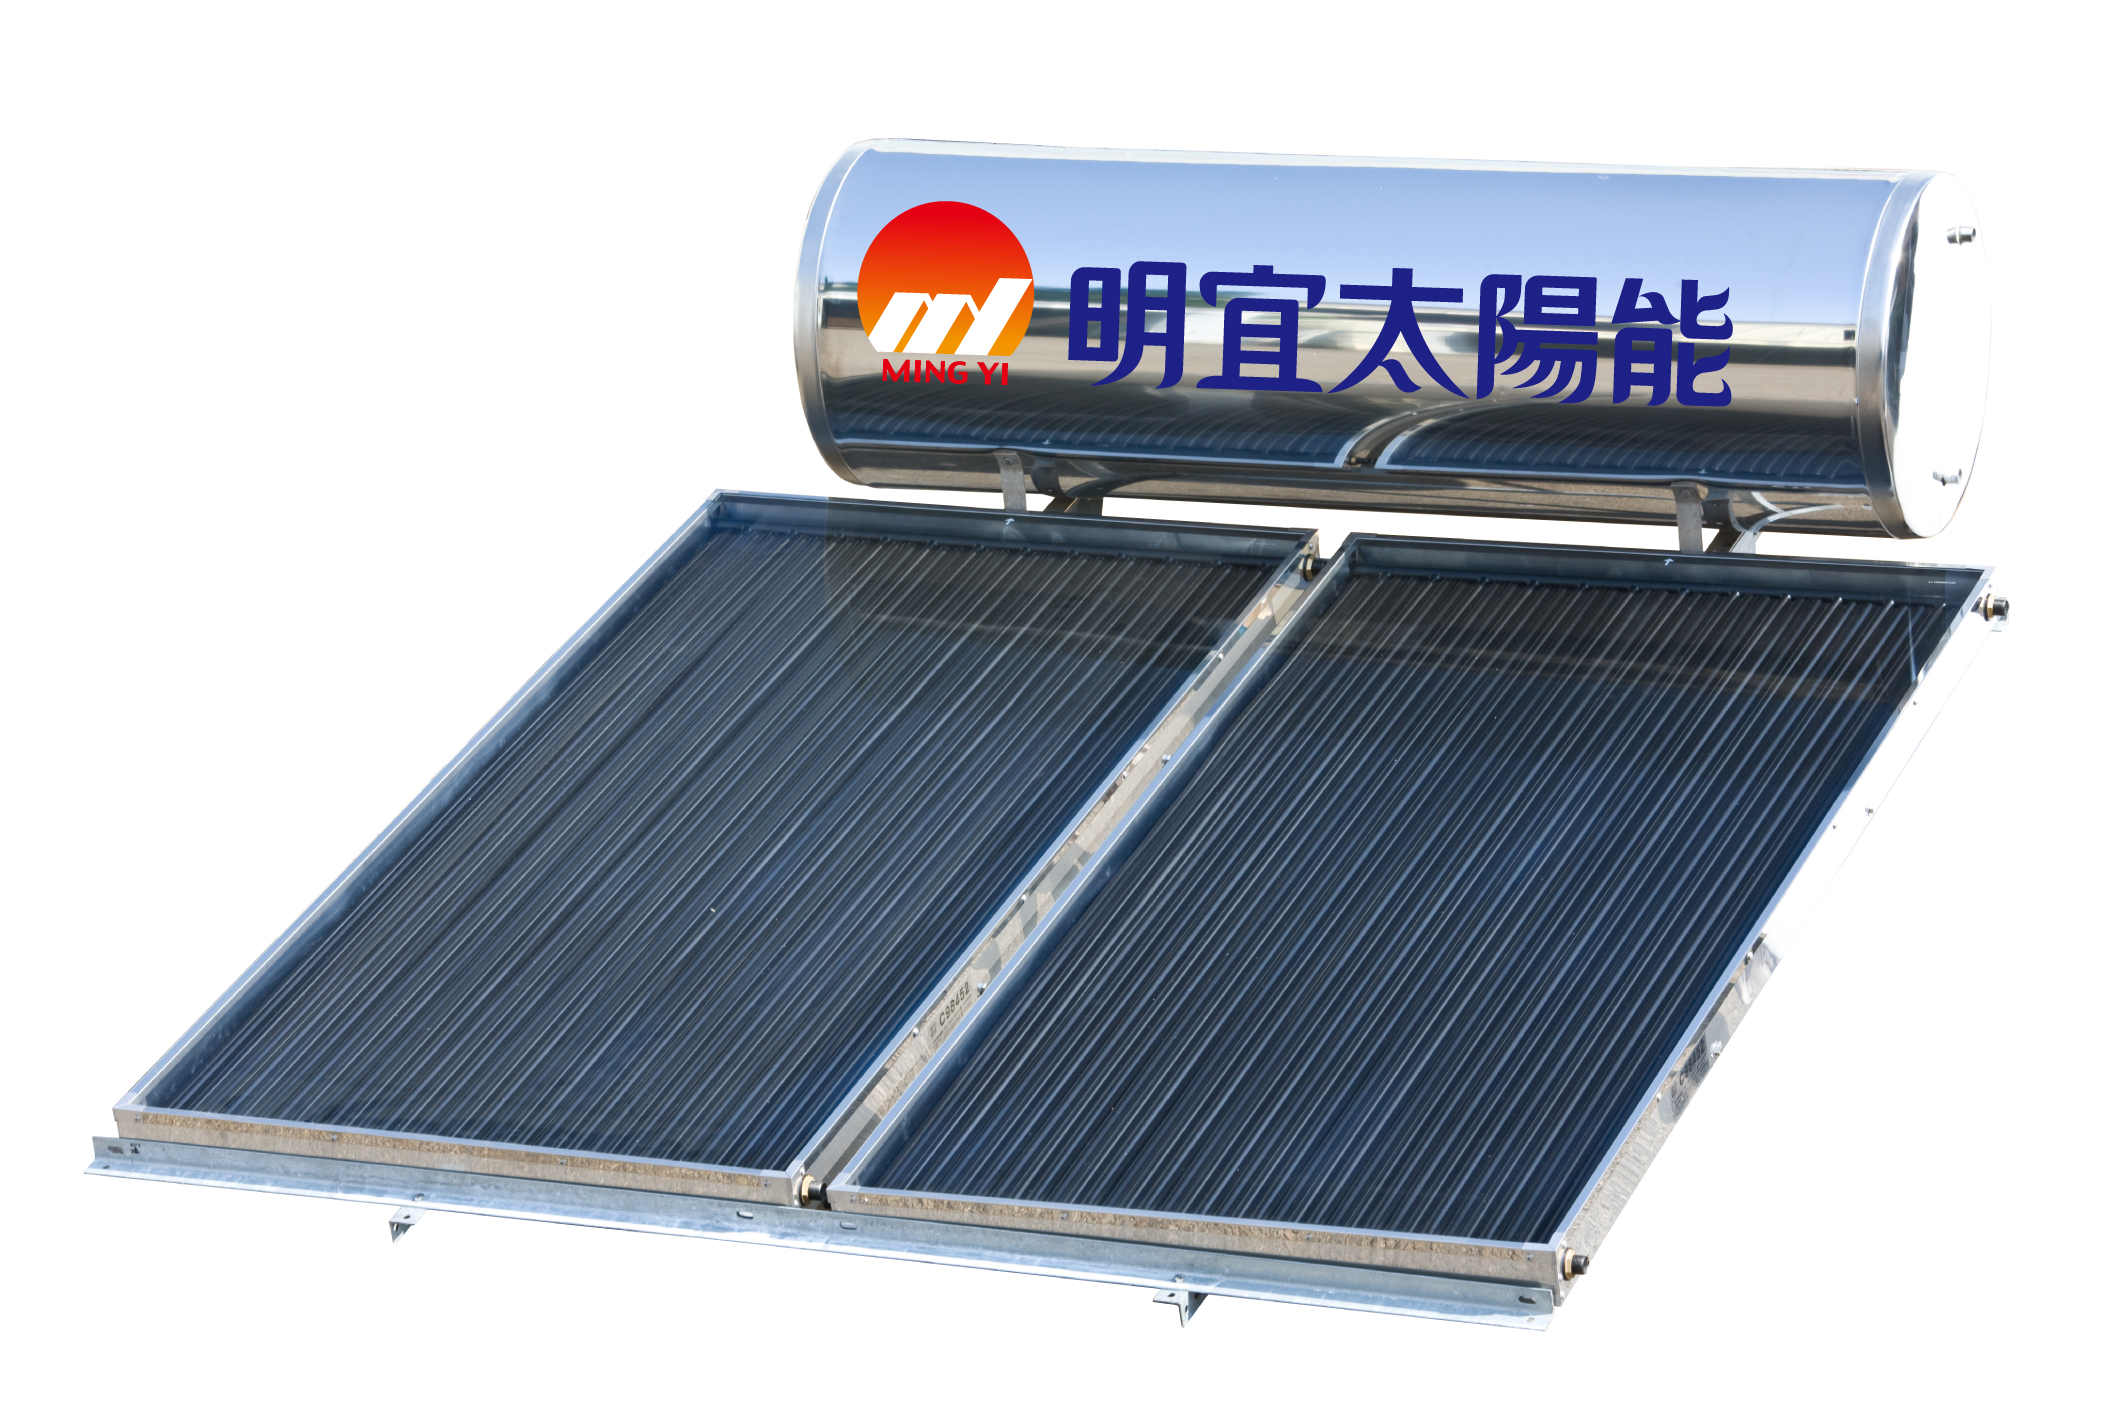 平板式太陽能熱水器MY-302-2L